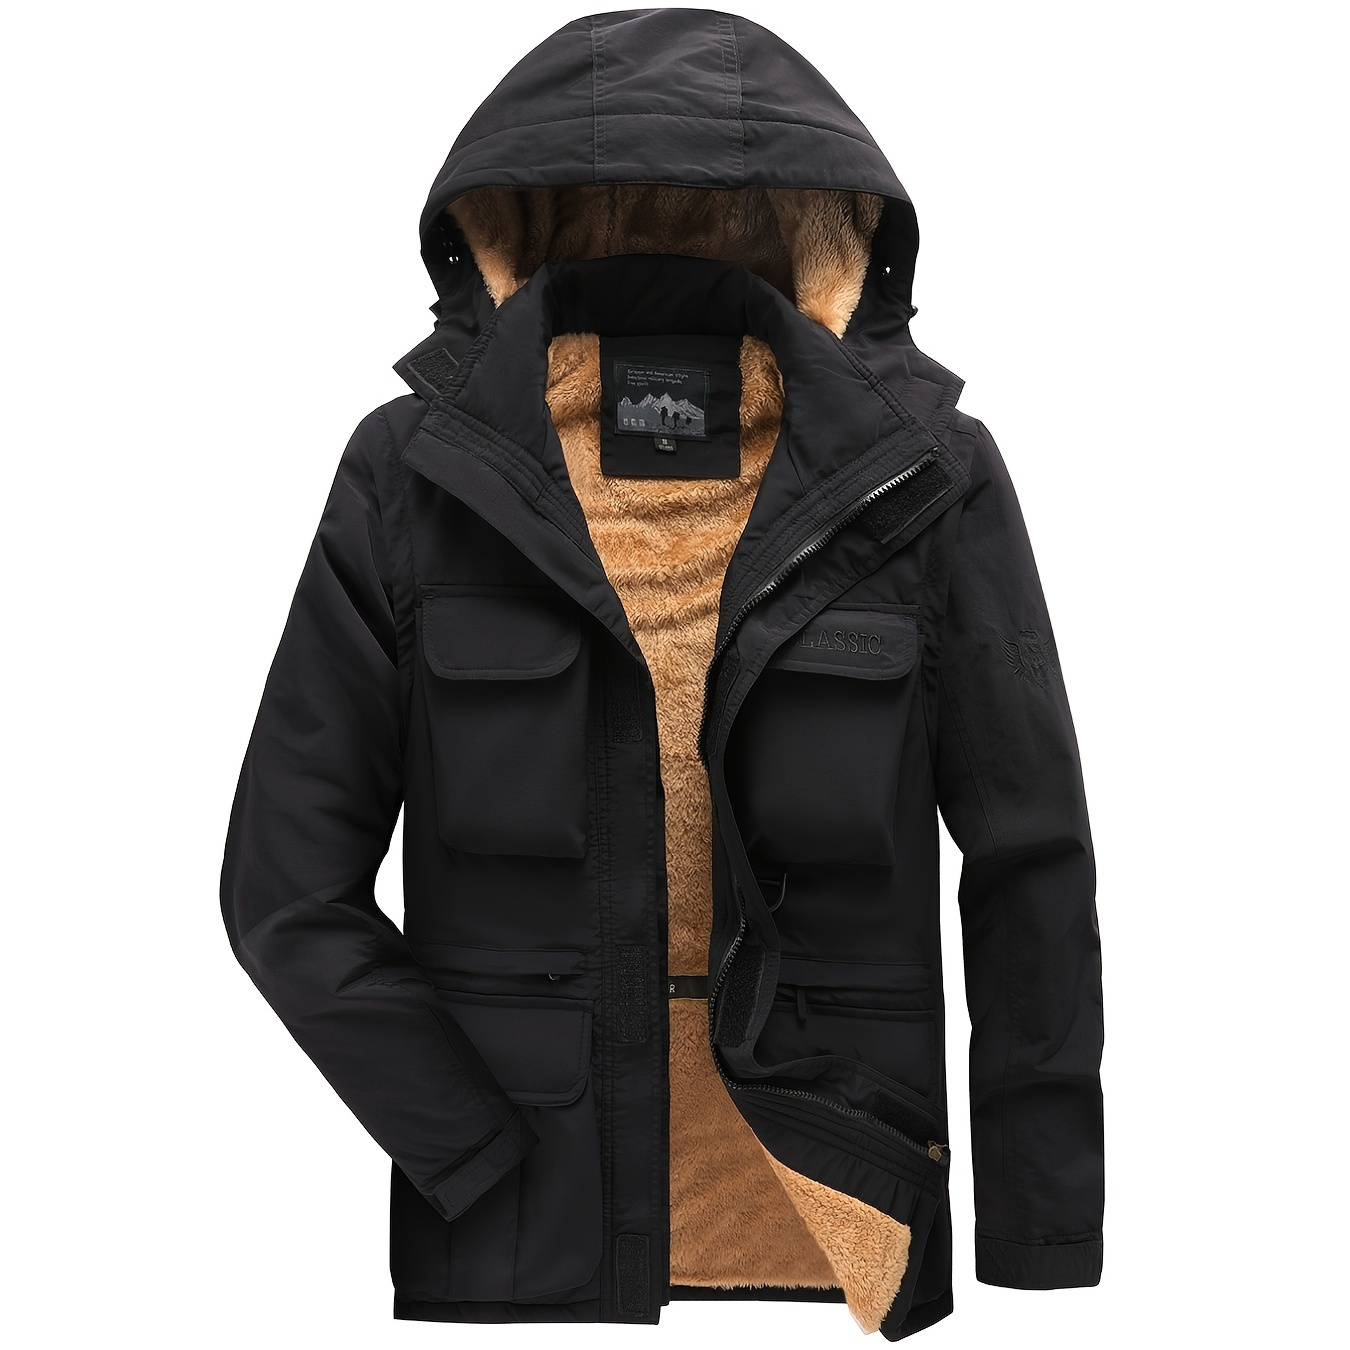 

Men's Multi-pocket Windproof Waterproof Cargo Jacket Warm Coats Fleece Lined Jackets With Removable Hood